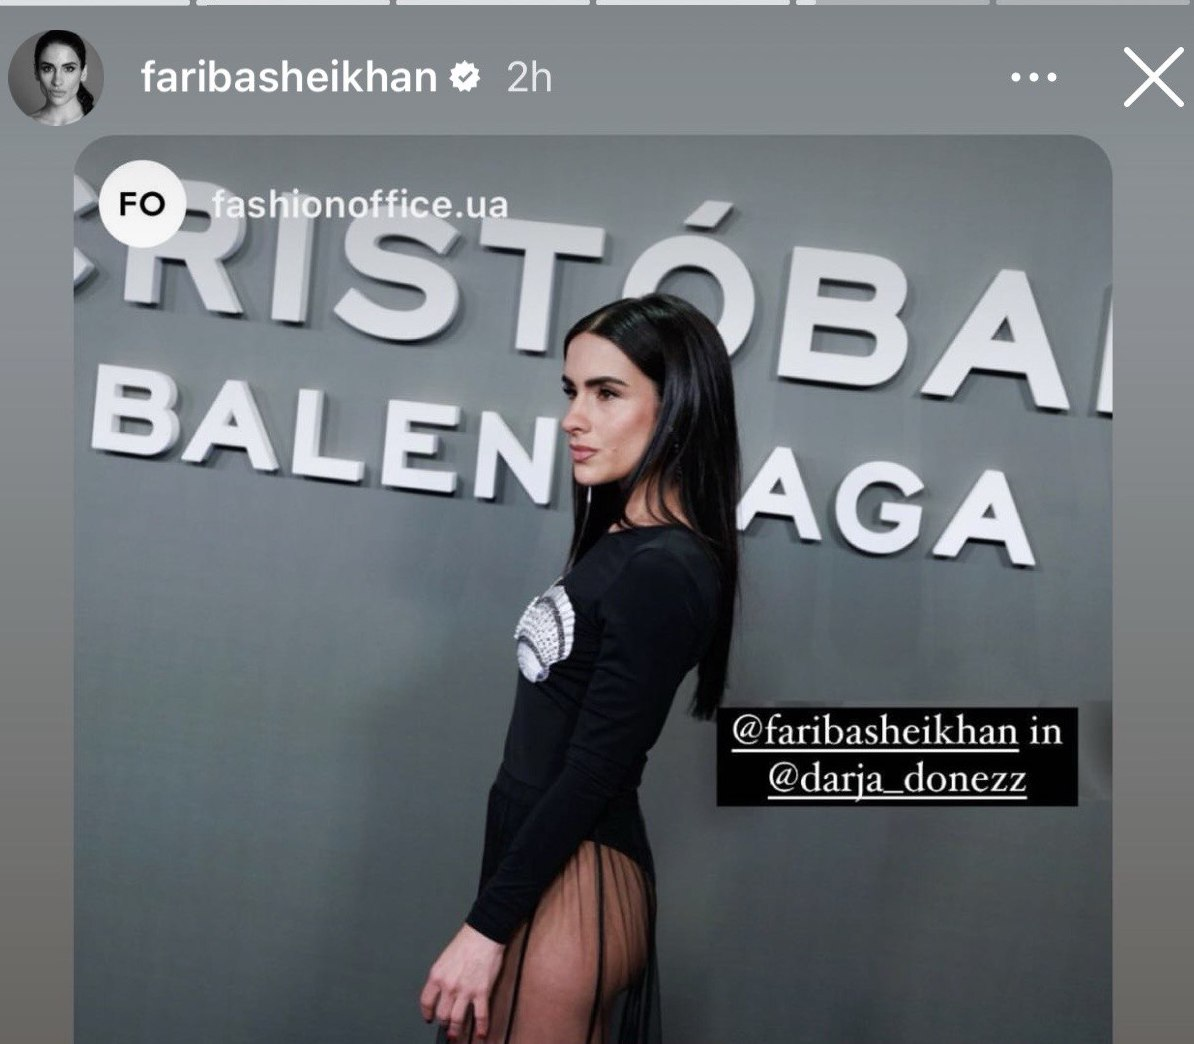 Український бренд Darja Donezz отримав світове визнання, втіливши в життя сміливий образ іспанської акторки Фаріби Шейхан